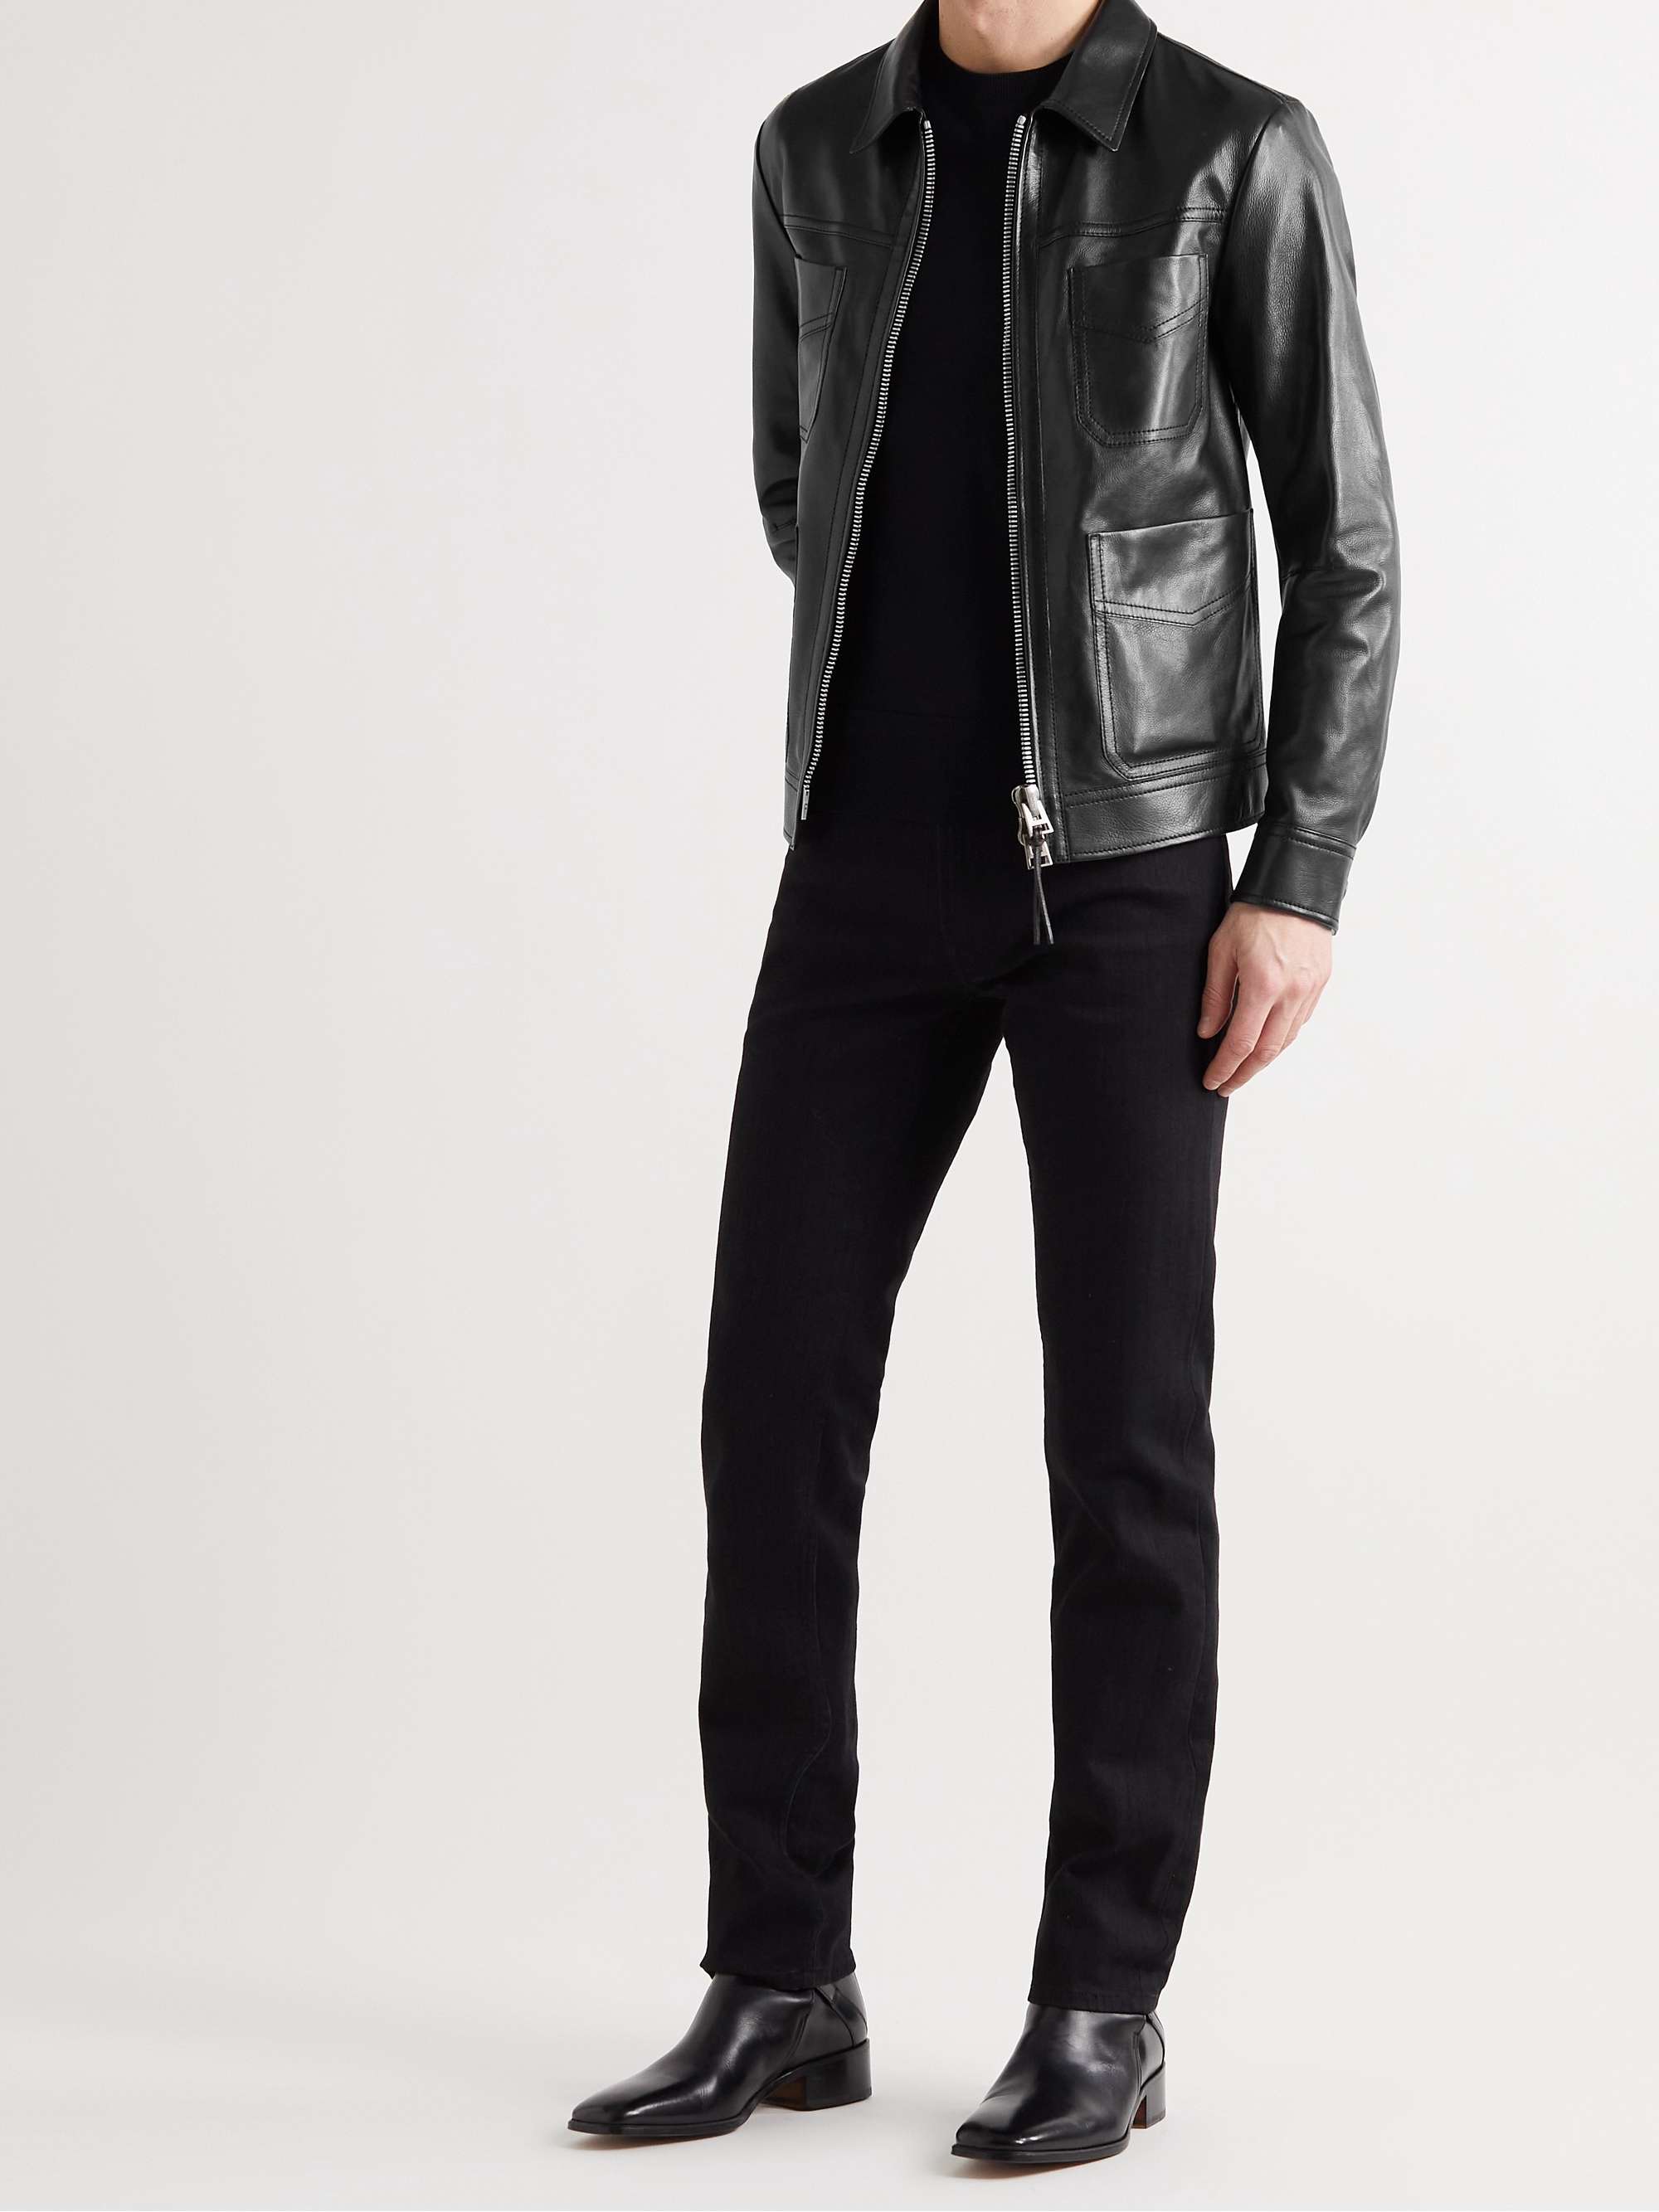 TOM FORD Leather Blouson Jacket for Men | MR PORTER